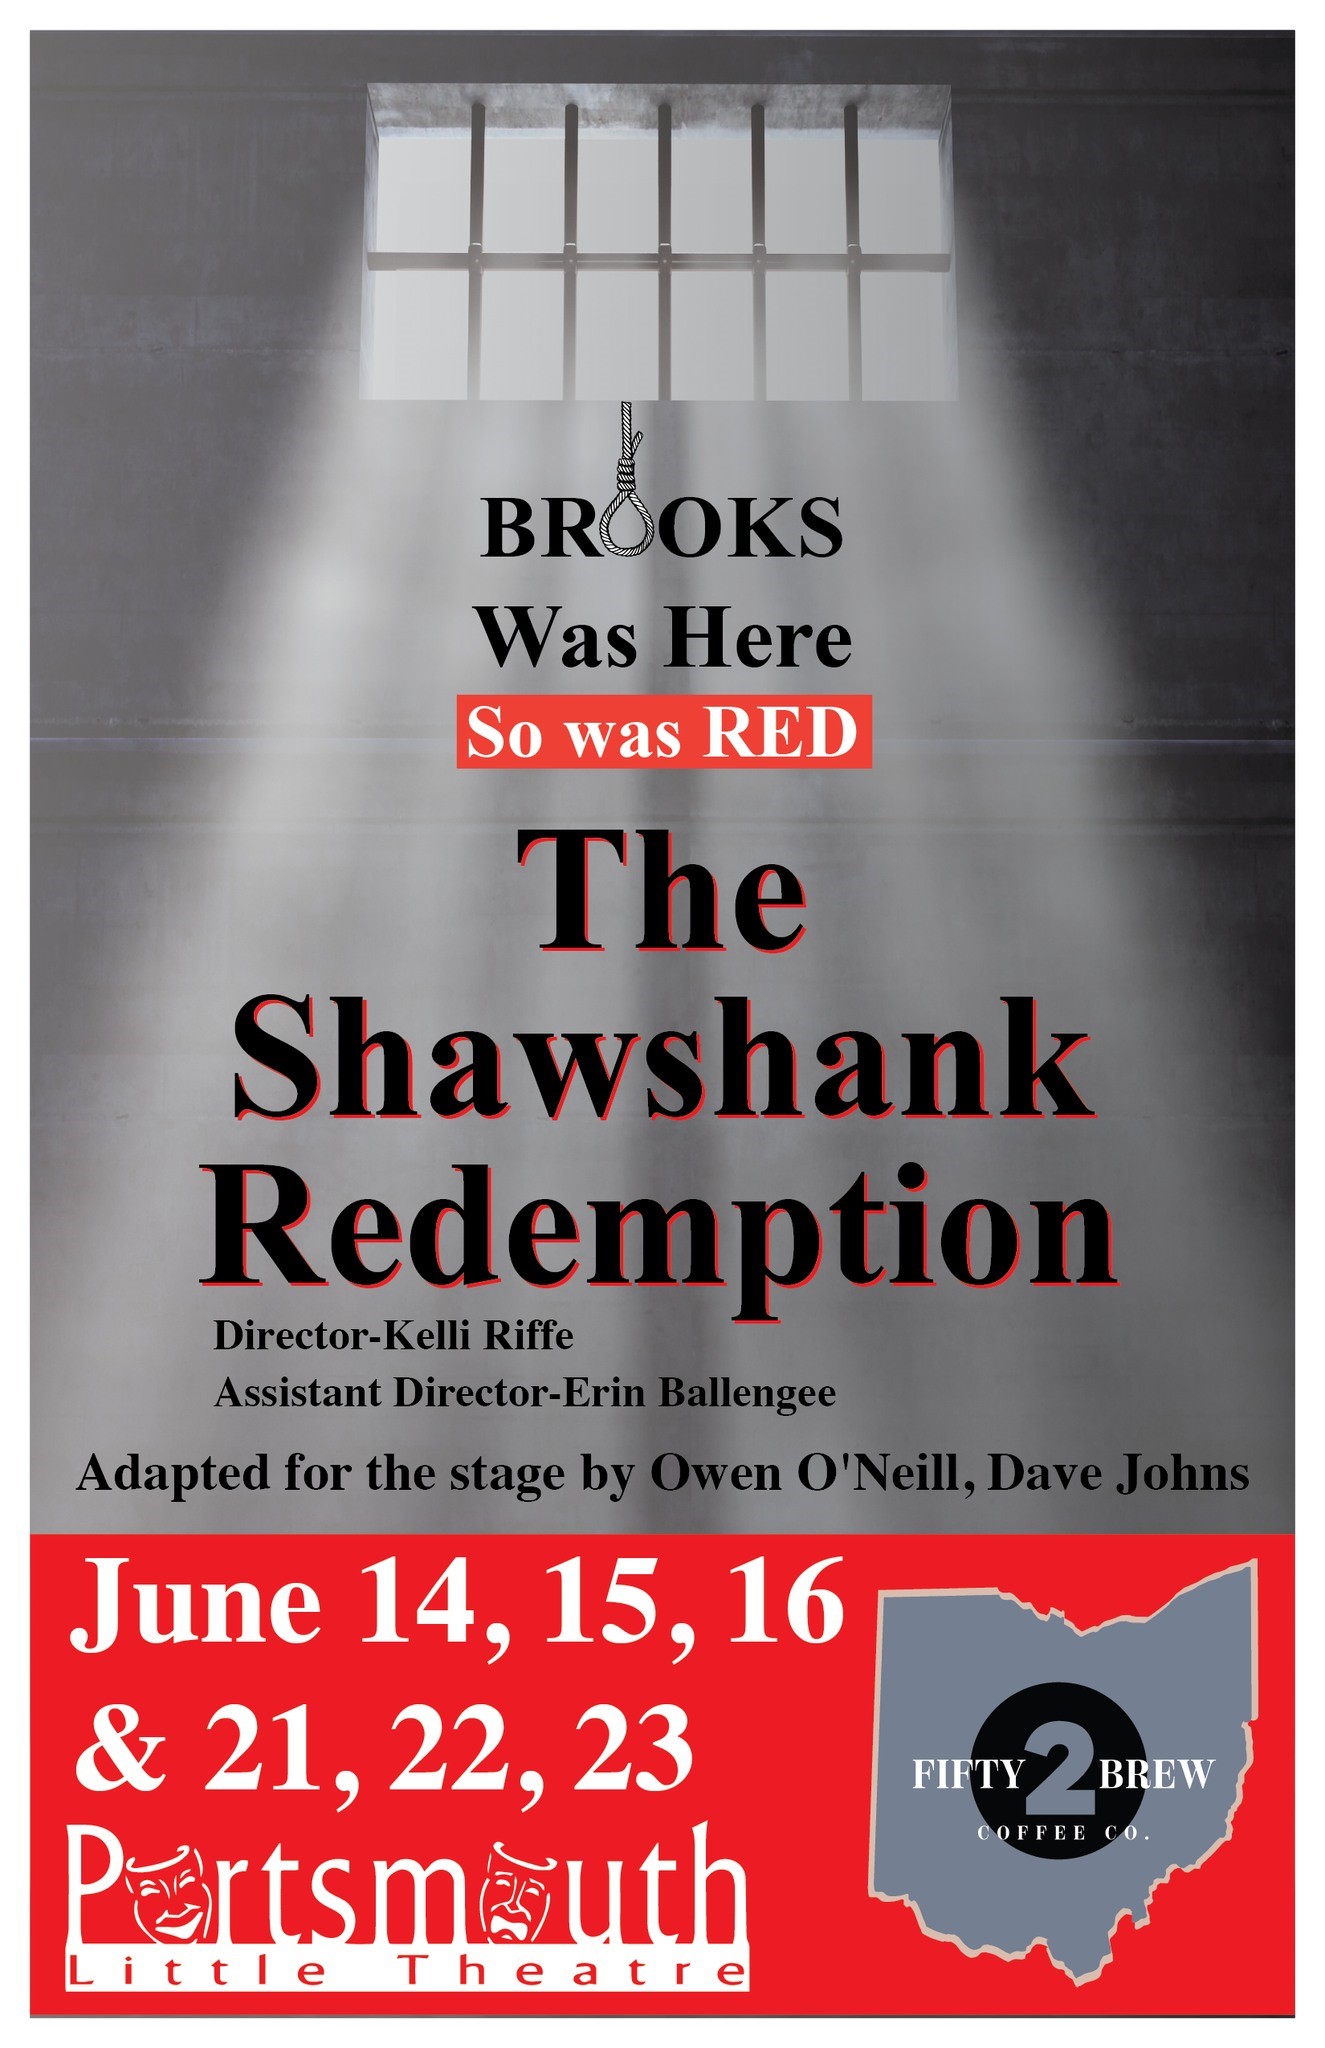 Shawshank Redemption  on jun. 14, 19:30@Portsmouth Little Theatre - Elegir asientoCompra entradas y obtén información enPortsmouth Little Theatre 